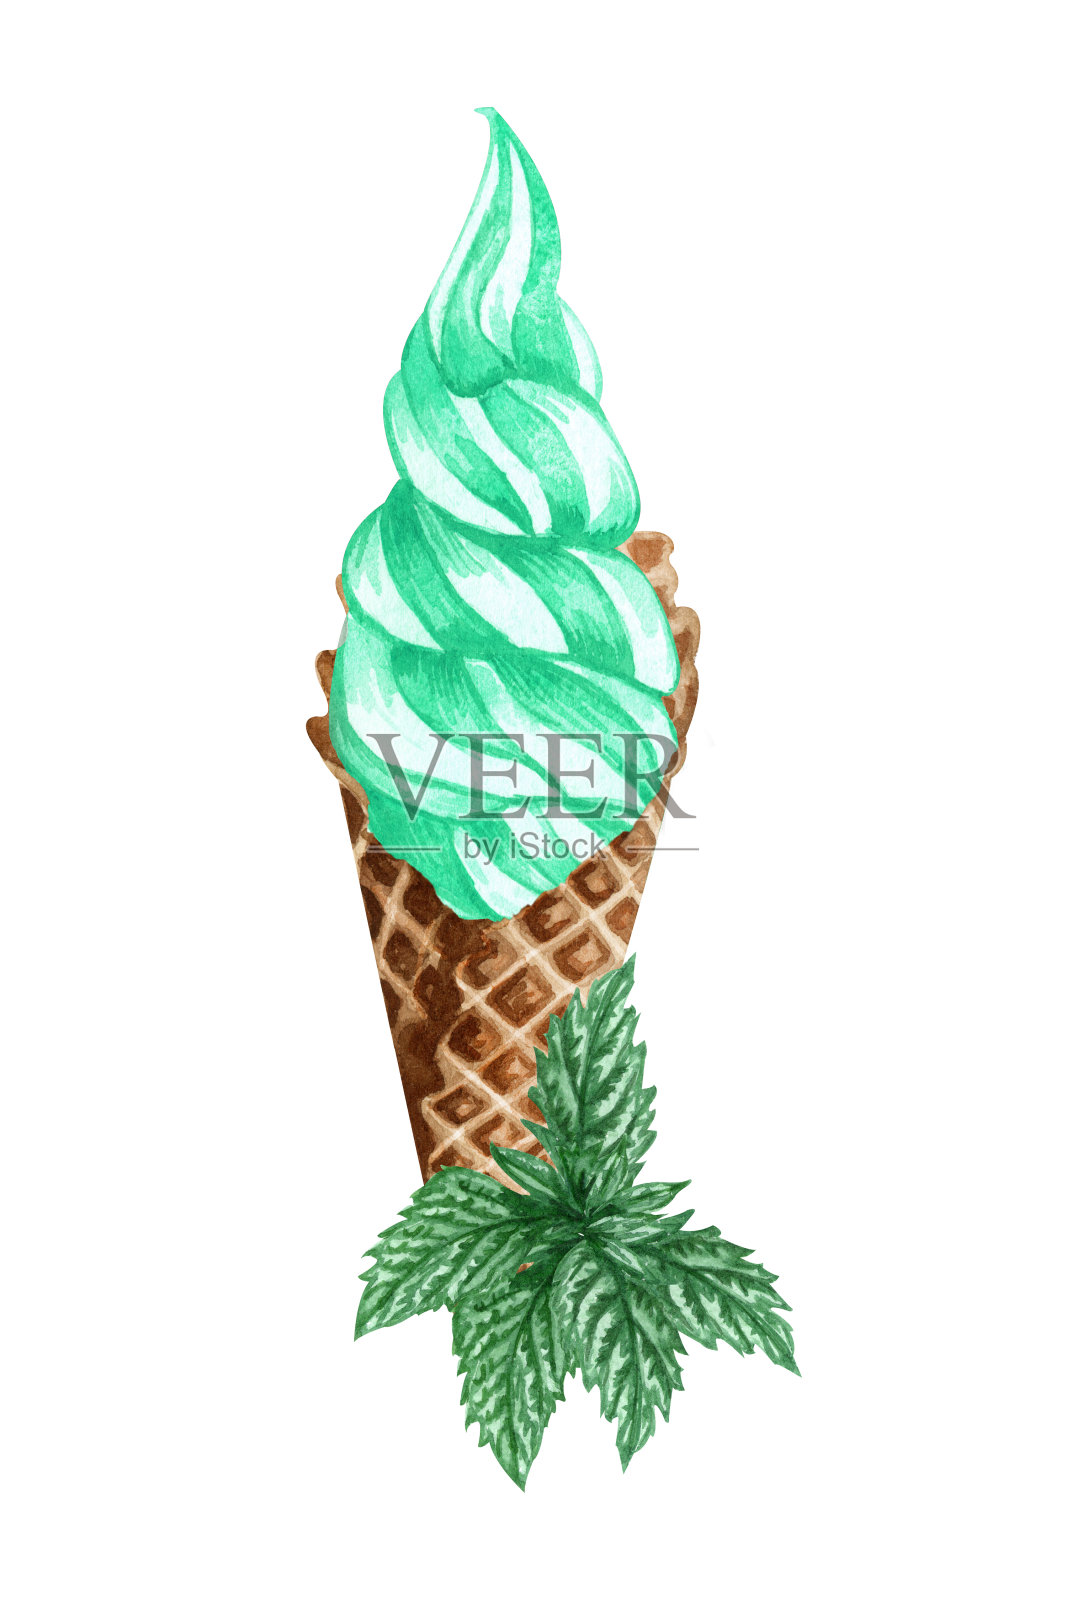 水彩薄荷冰淇淋蛋筒孤立在白色背景。手绘插图新鲜薄荷叶和绿冰淇淋在华夫蛋筒。插画图片素材